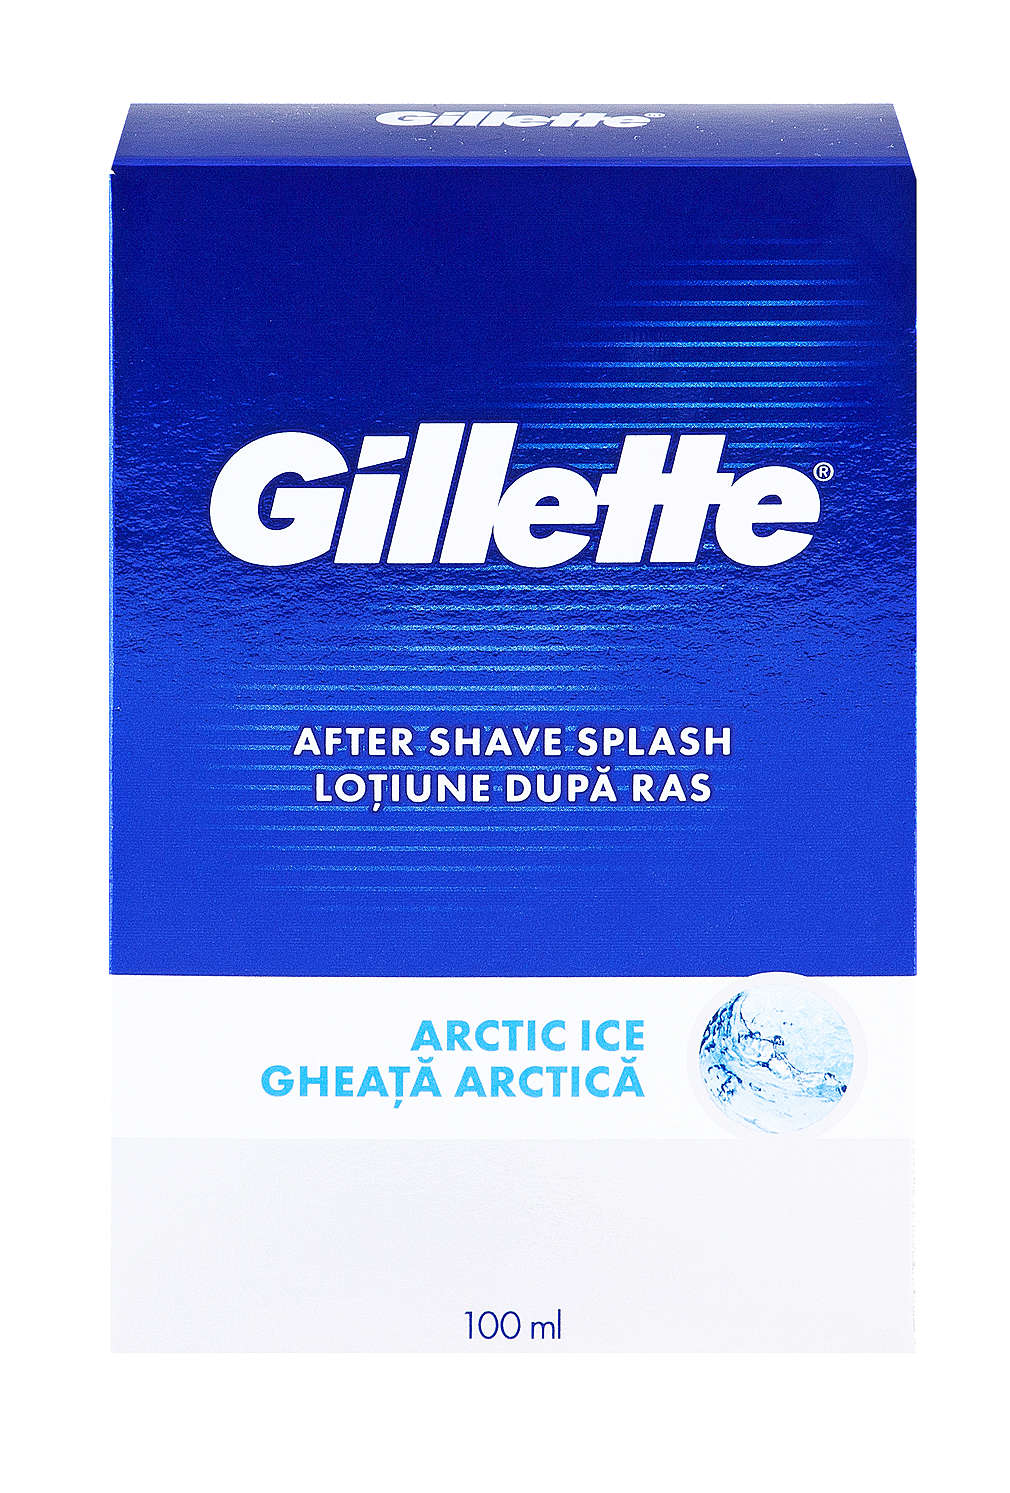 Fotografija ponude Gillette Losion poslije brijanja